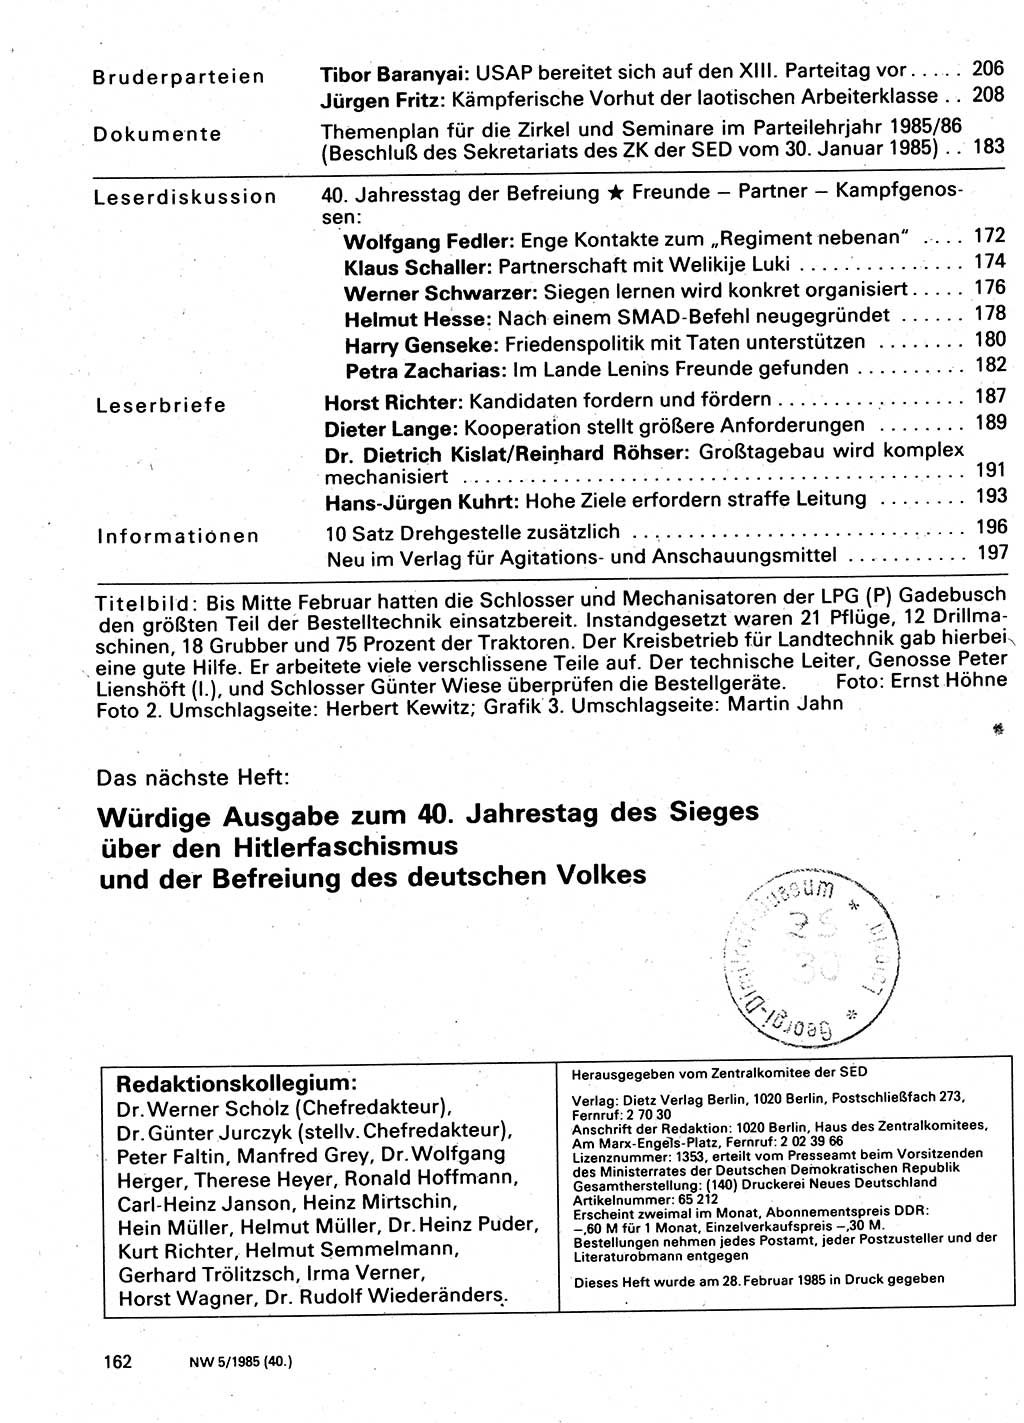 Neuer Weg (NW), Organ des Zentralkomitees (ZK) der SED (Sozialistische Einheitspartei Deutschlands) für Fragen des Parteilebens, 40. Jahrgang [Deutsche Demokratische Republik (DDR)] 1985, Seite 162 (NW ZK SED DDR 1985, S. 162)